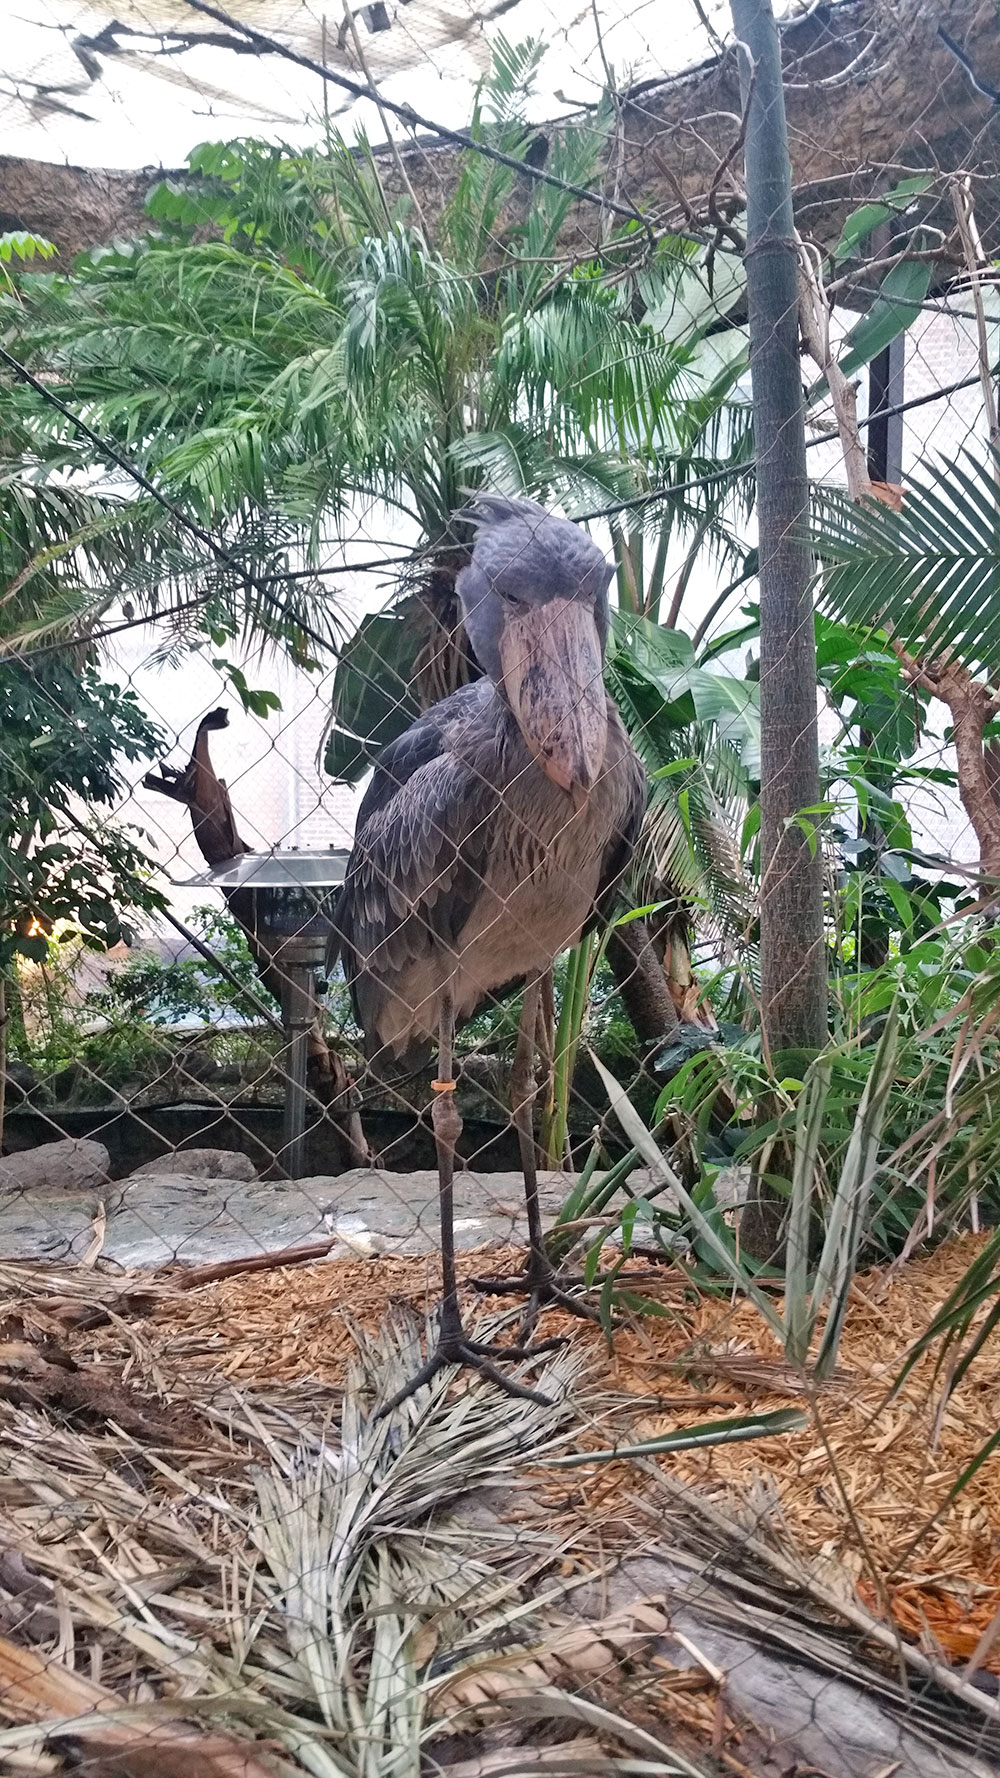 Real life angry bird at the Dallas World Aquarium